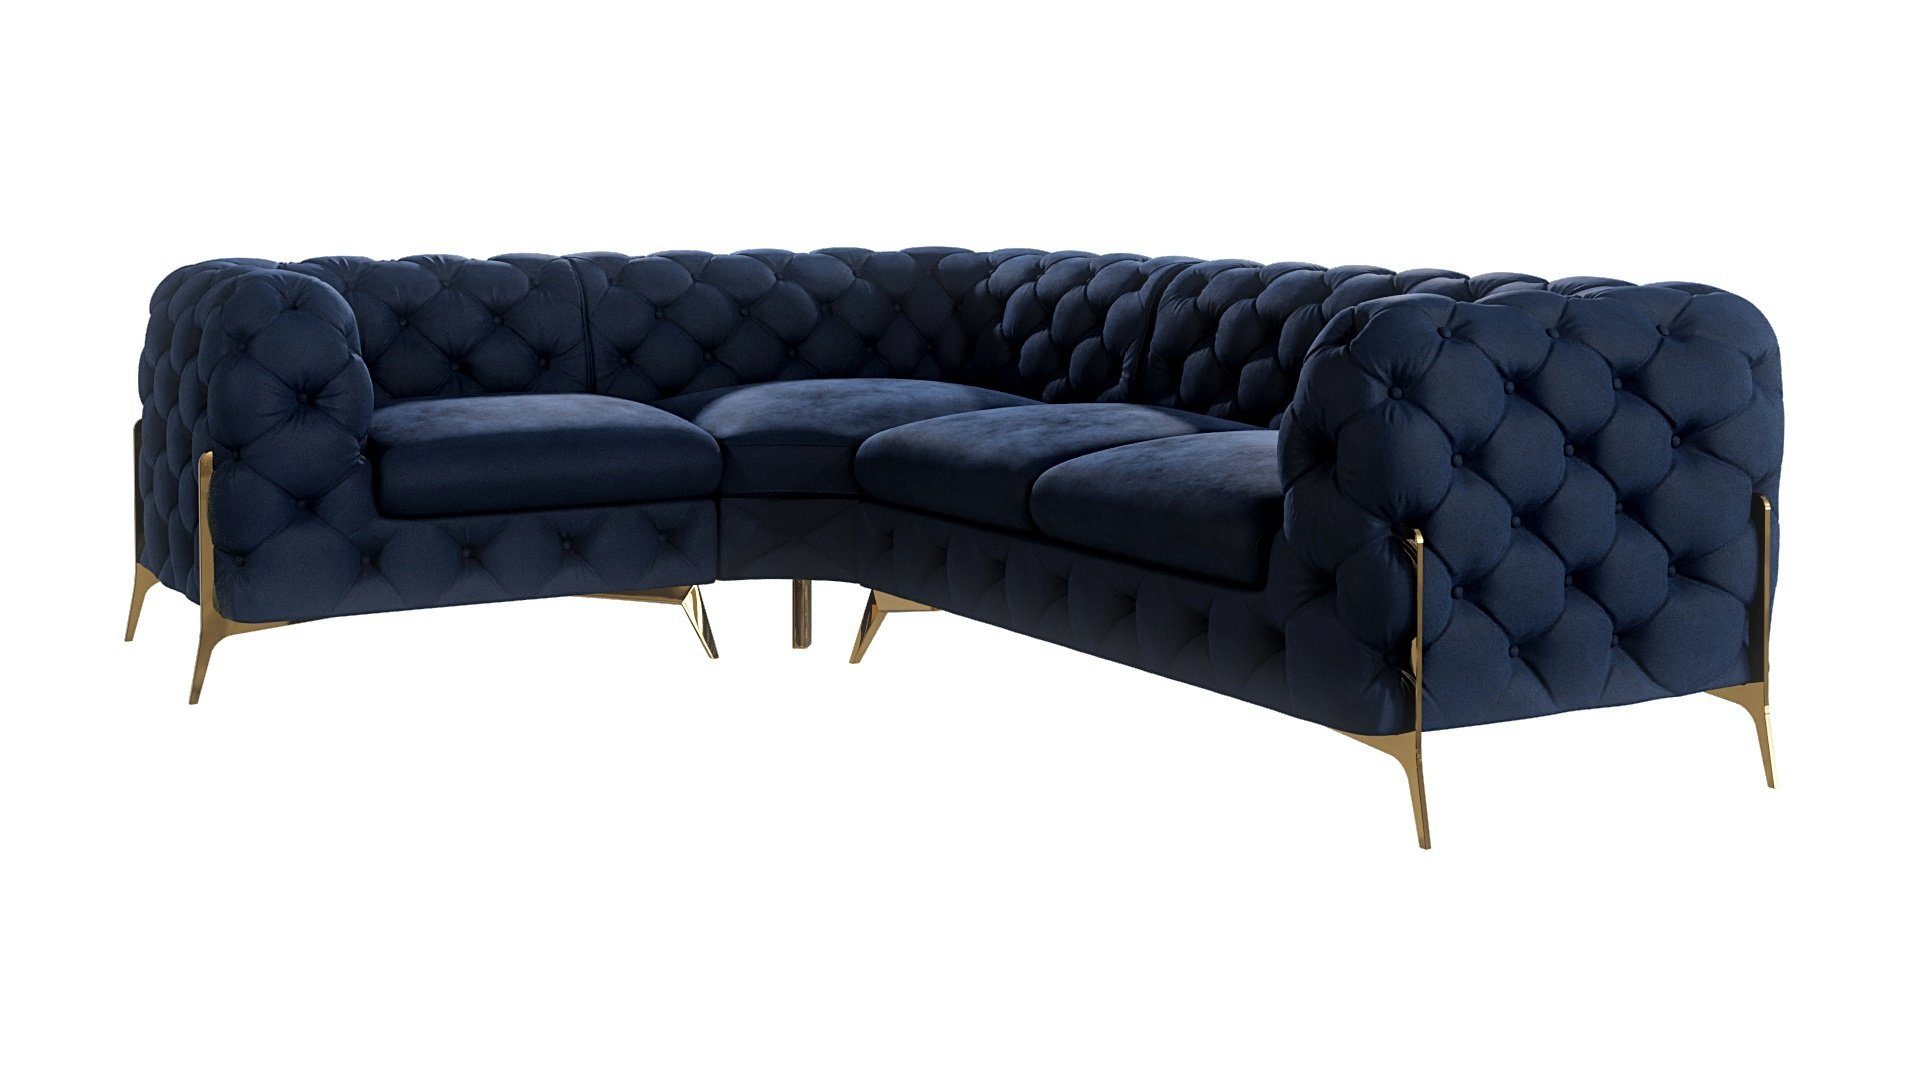 S-Style Möbel Ecksofa Chesterfield Ashley mit Goldene Metall Füßen, Die Eckeinheit kann entweder rechts- oder linkshändig sein, mit Wellenfederung Marineblau